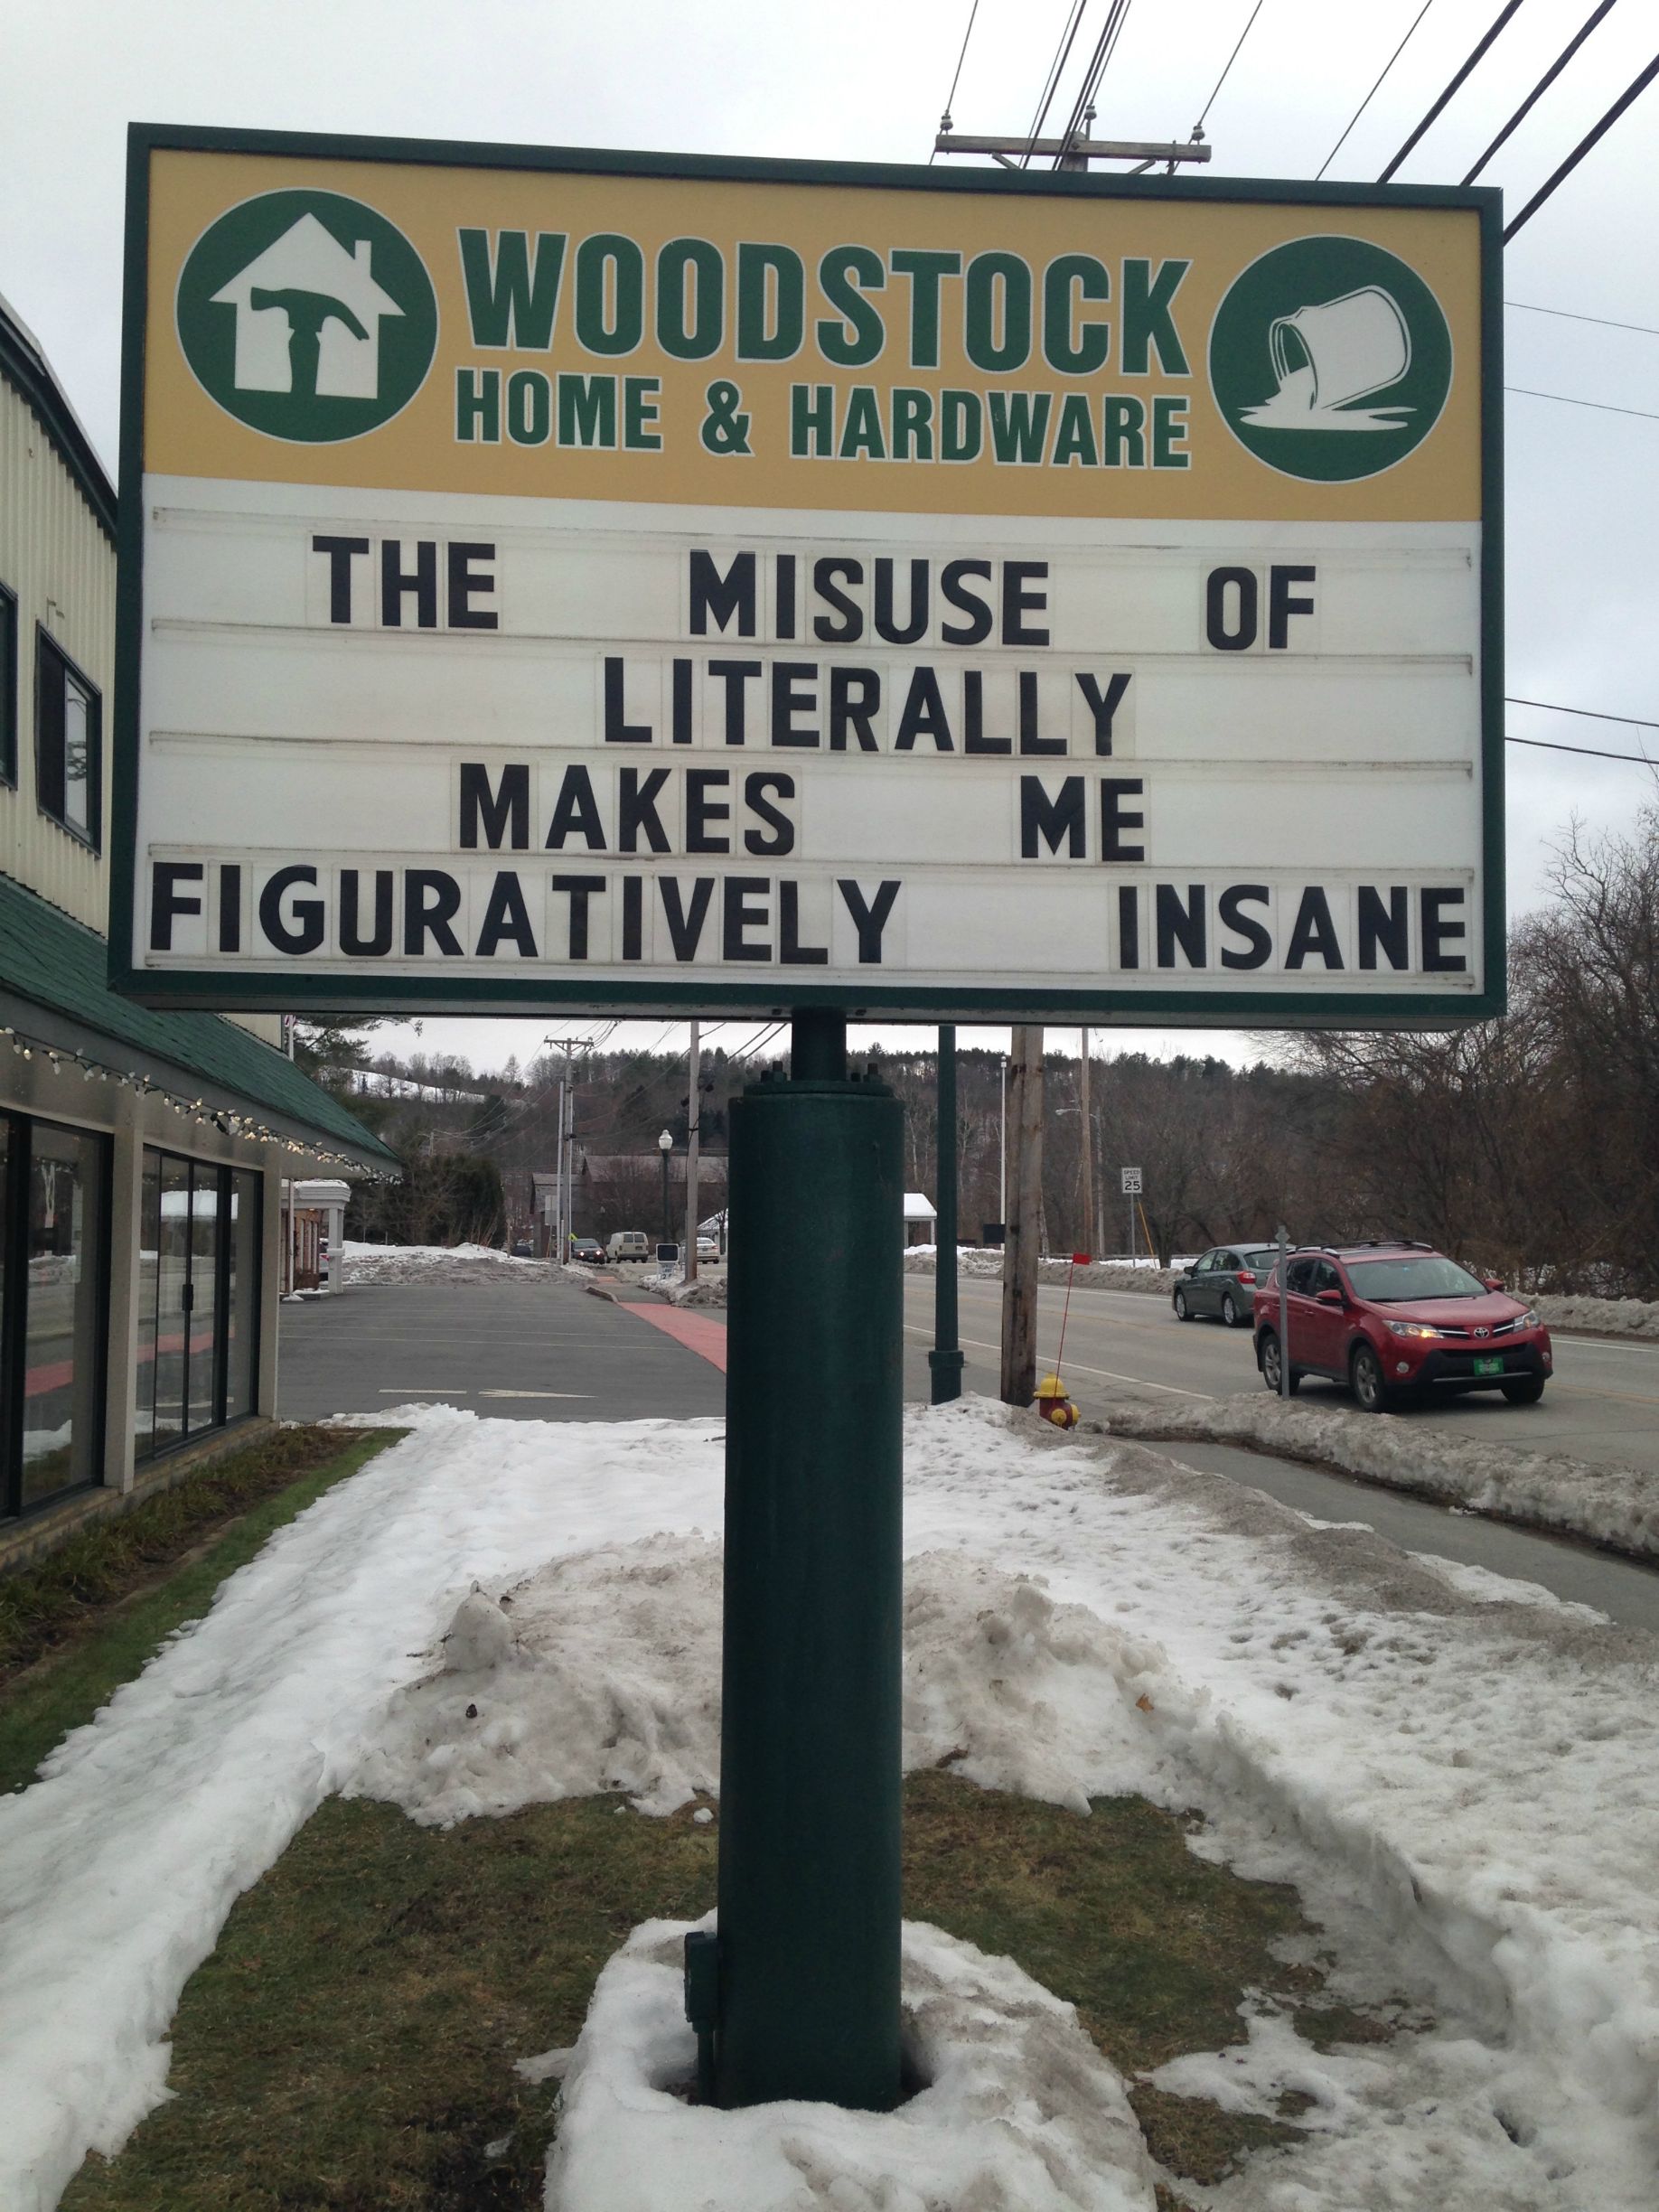 Seen in Woodstock, Vermont